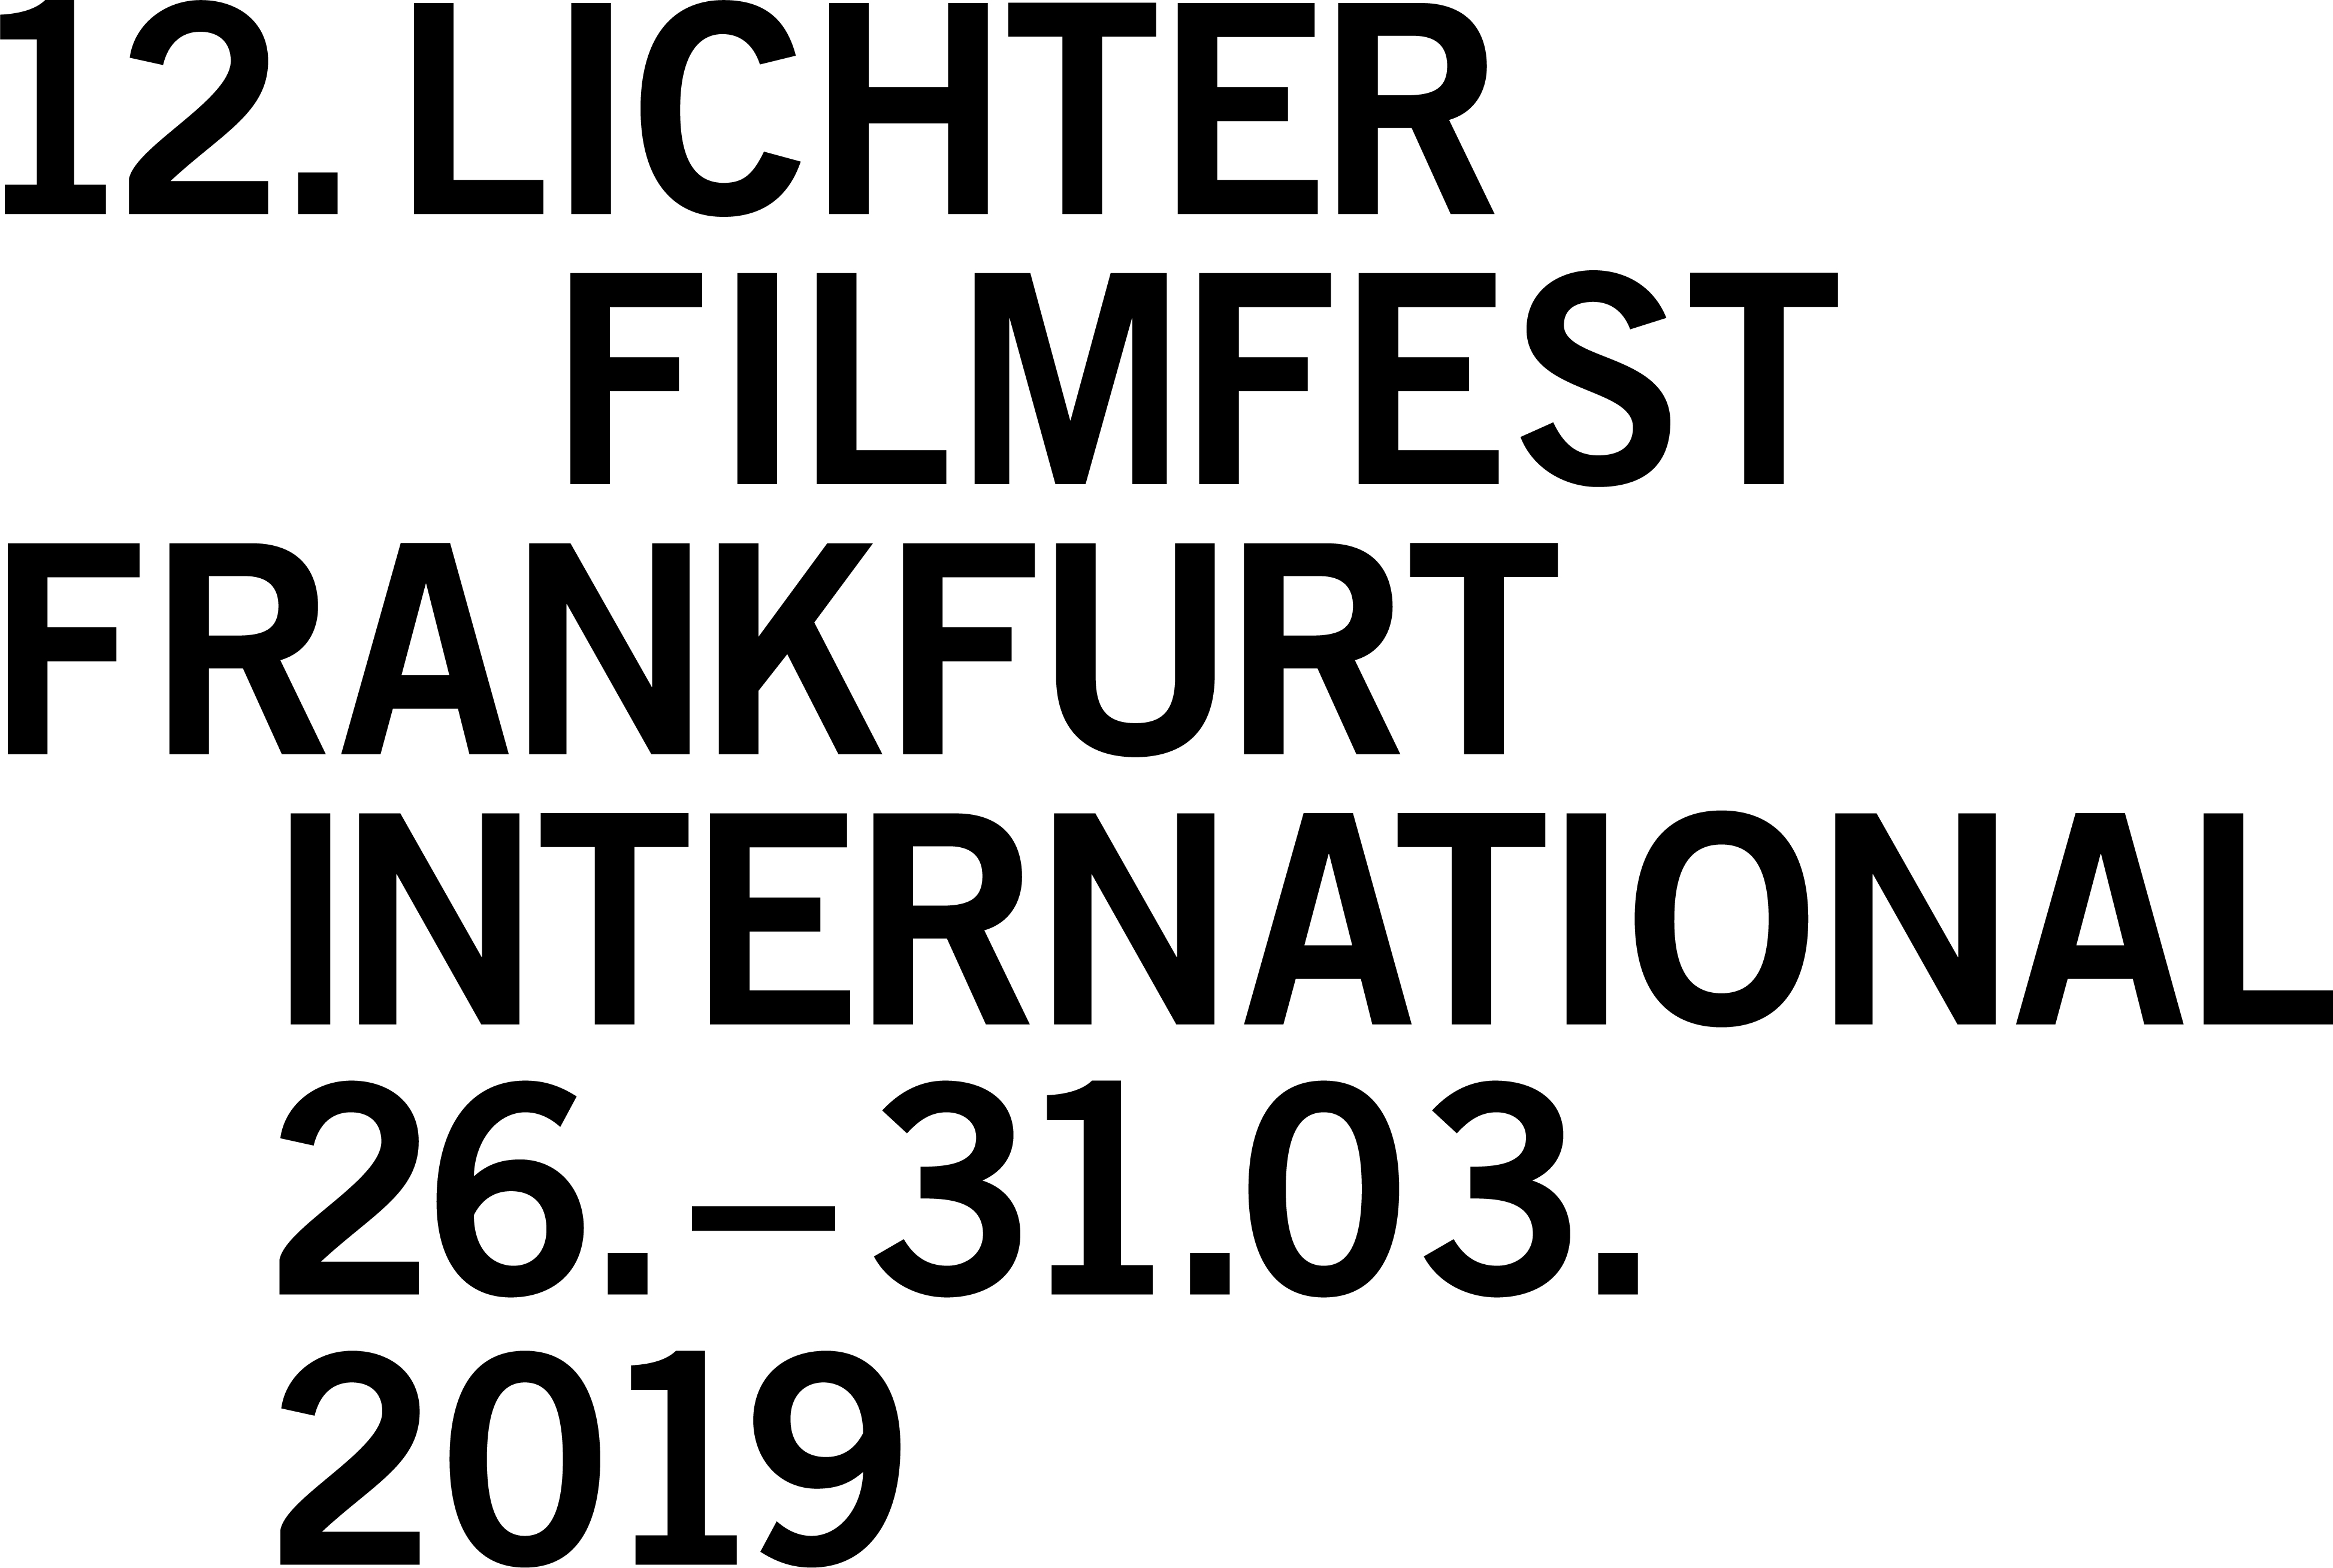 12. Lichter Filmfest Frankfurt International